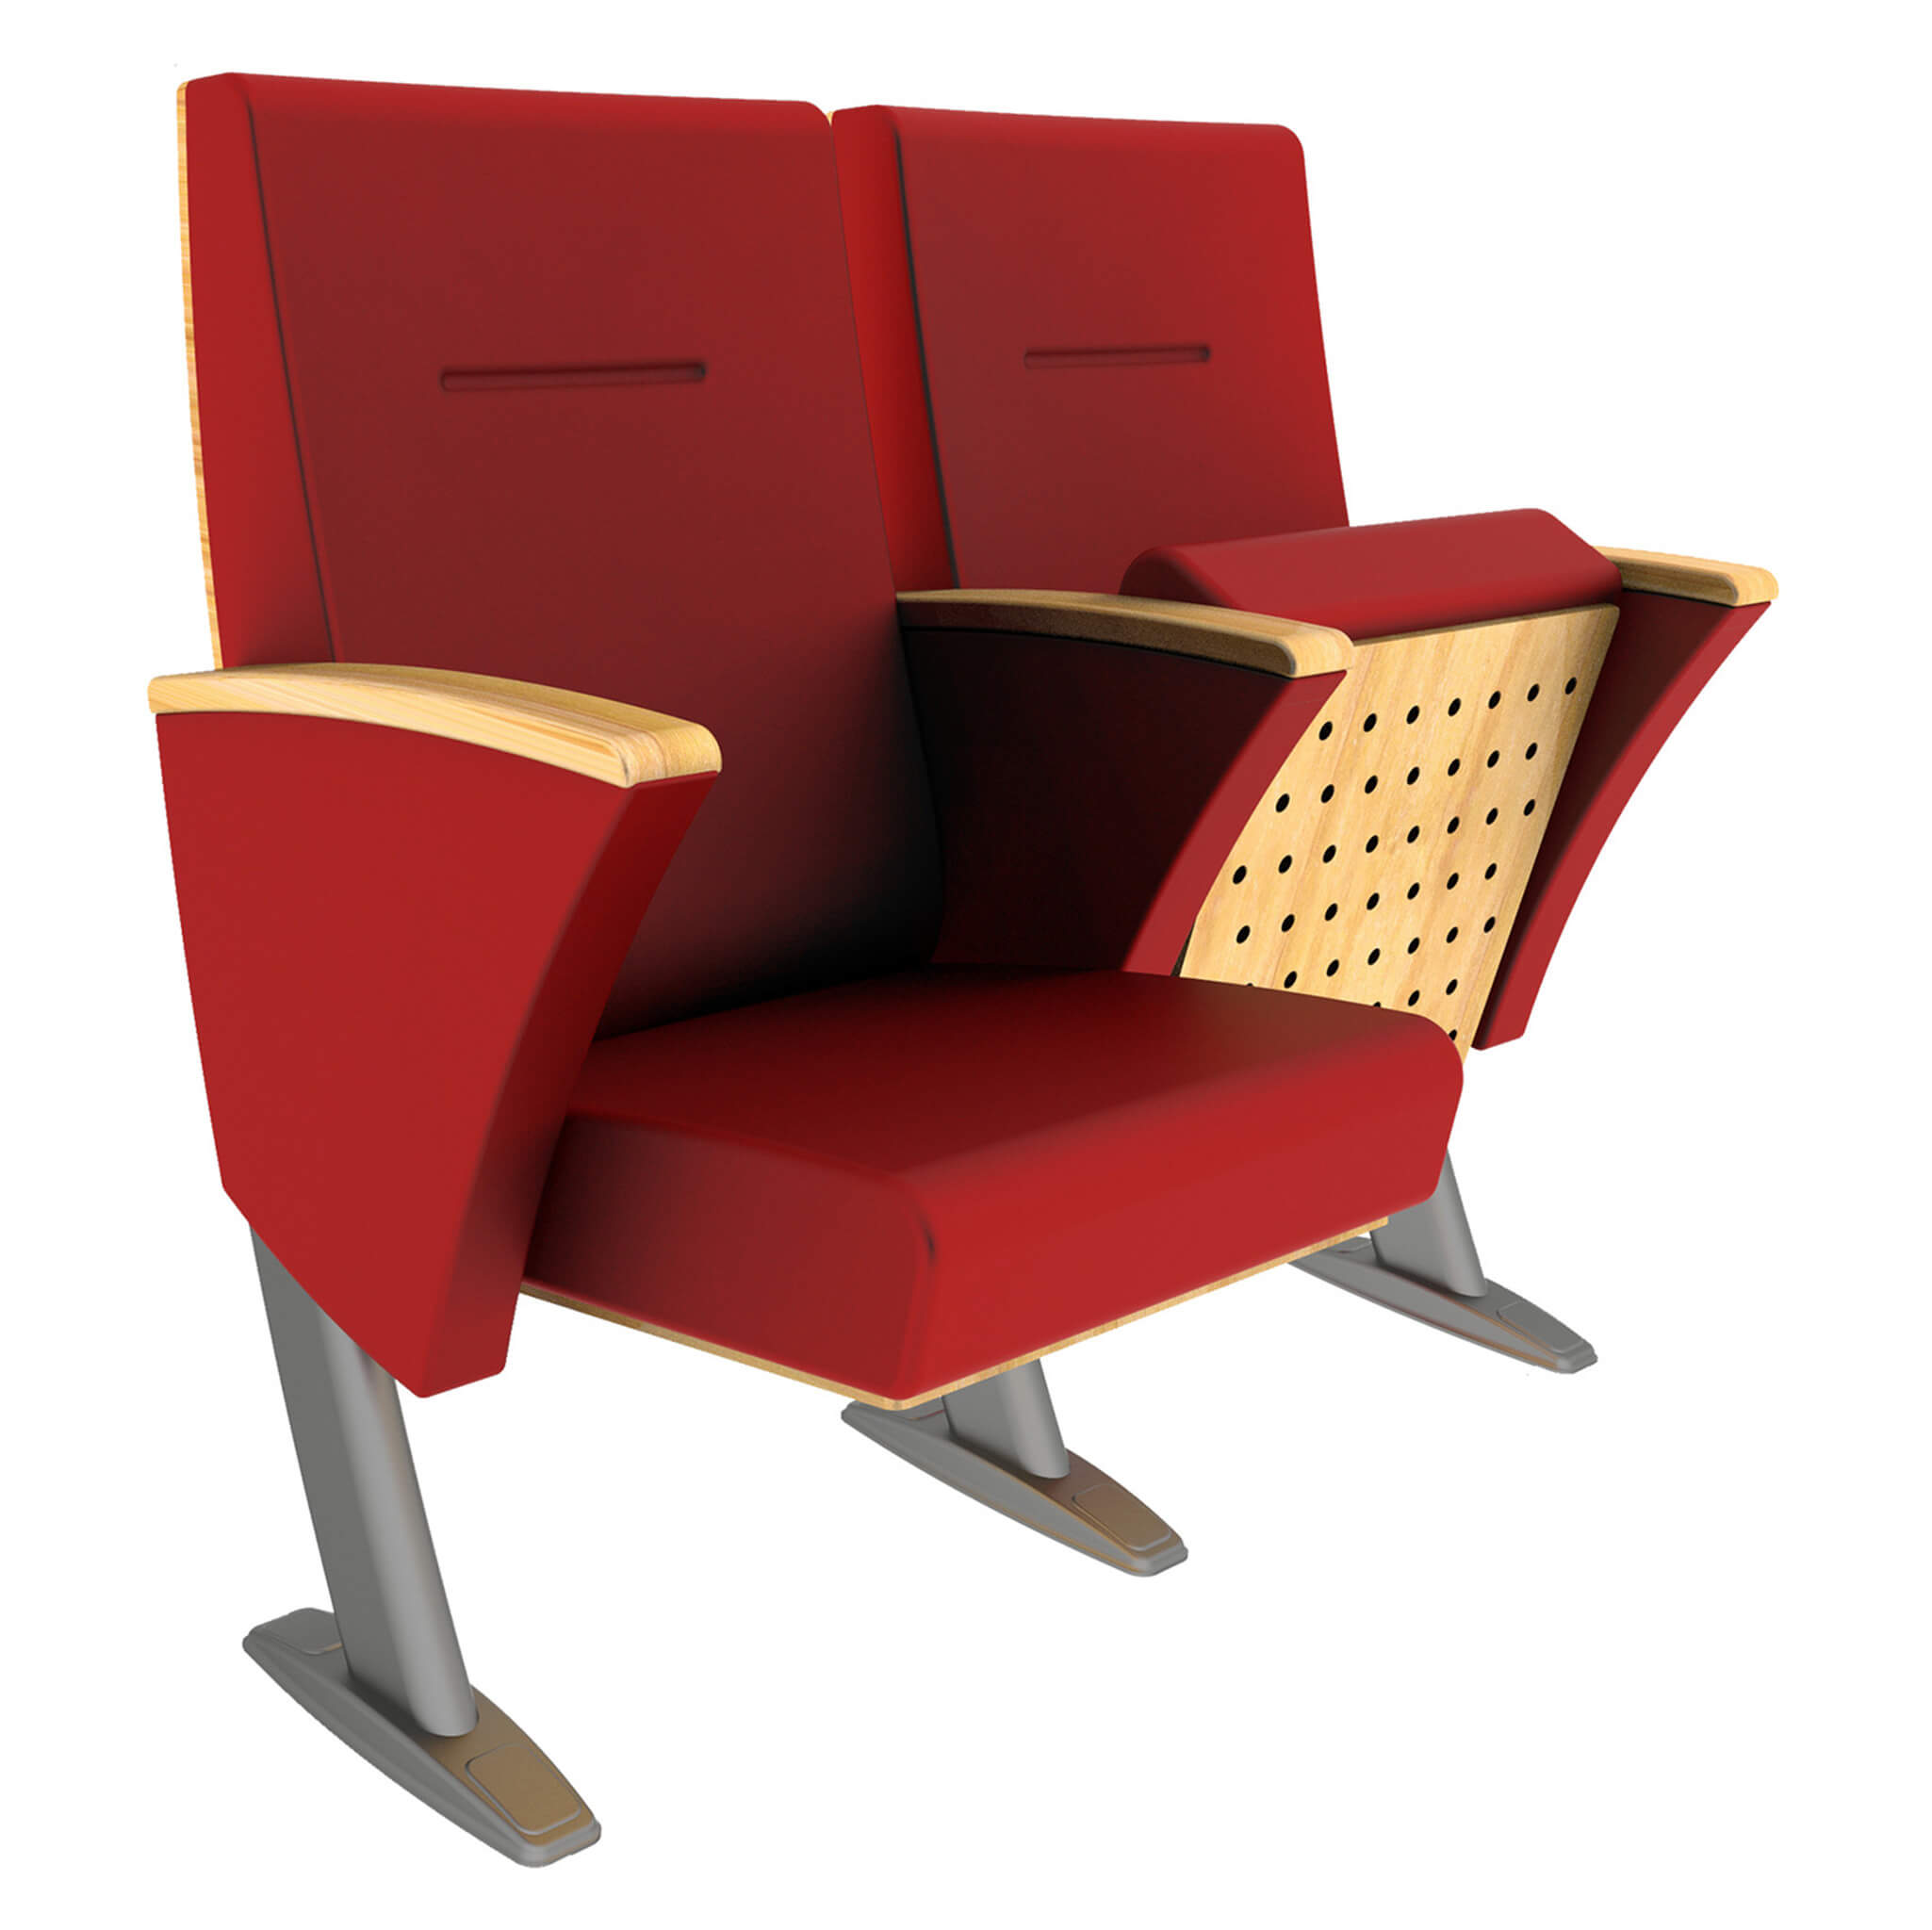 AKON A30 - Auditorium, Theatre Chair - Turkey - Seatorium - Public Seating Manufacturer